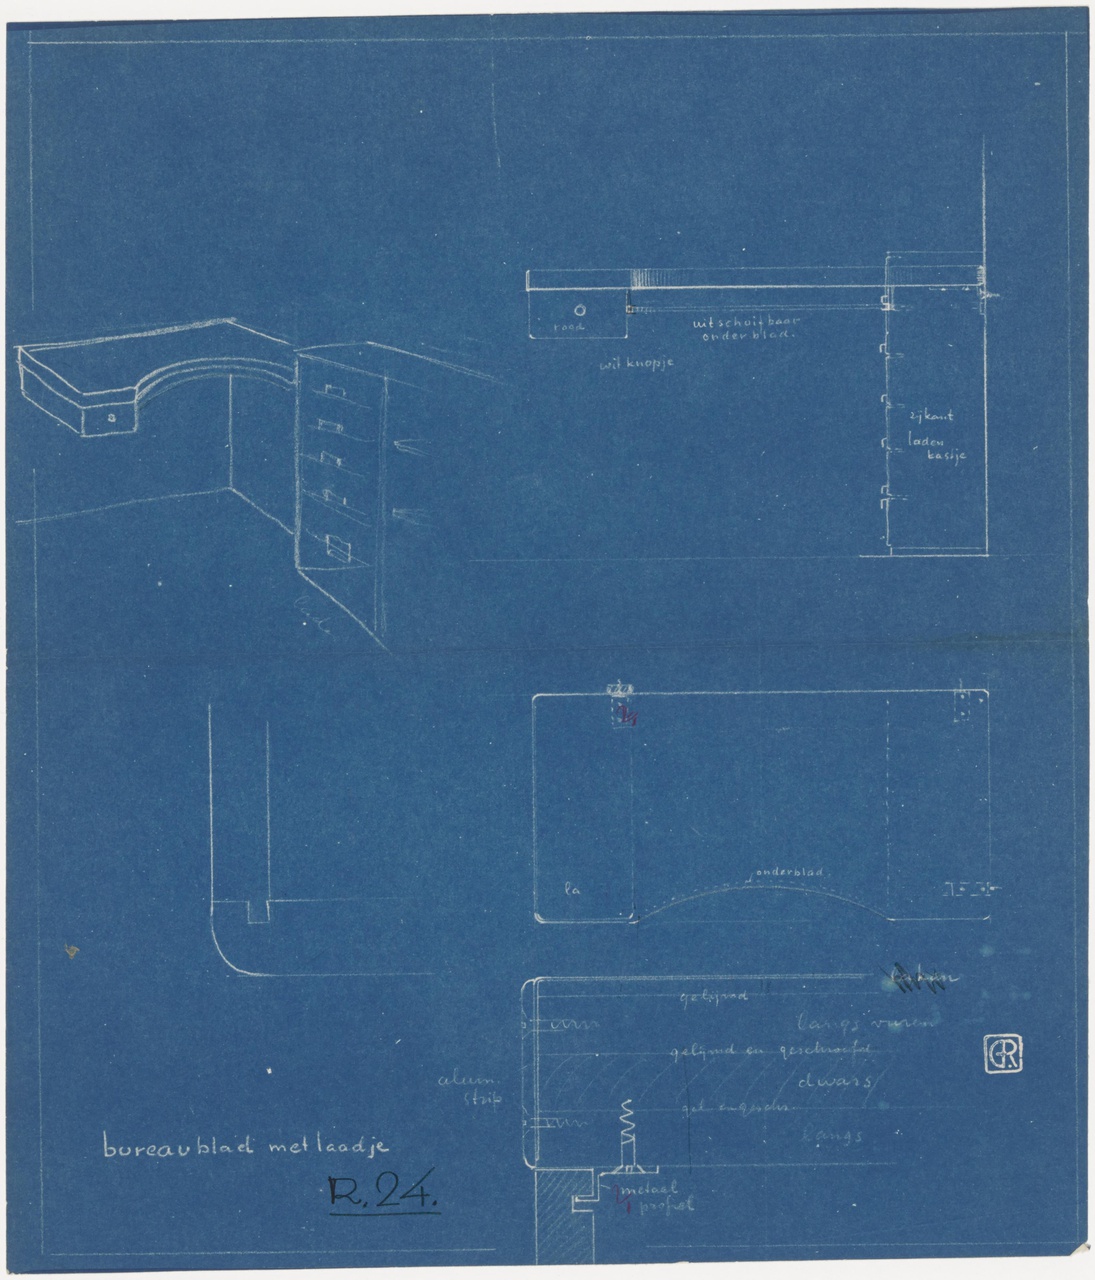 Woonslaapkamer 'de nieuwe woning' , Metz & Co, 's-Gravenhage, bureaublad met laatje, R 24